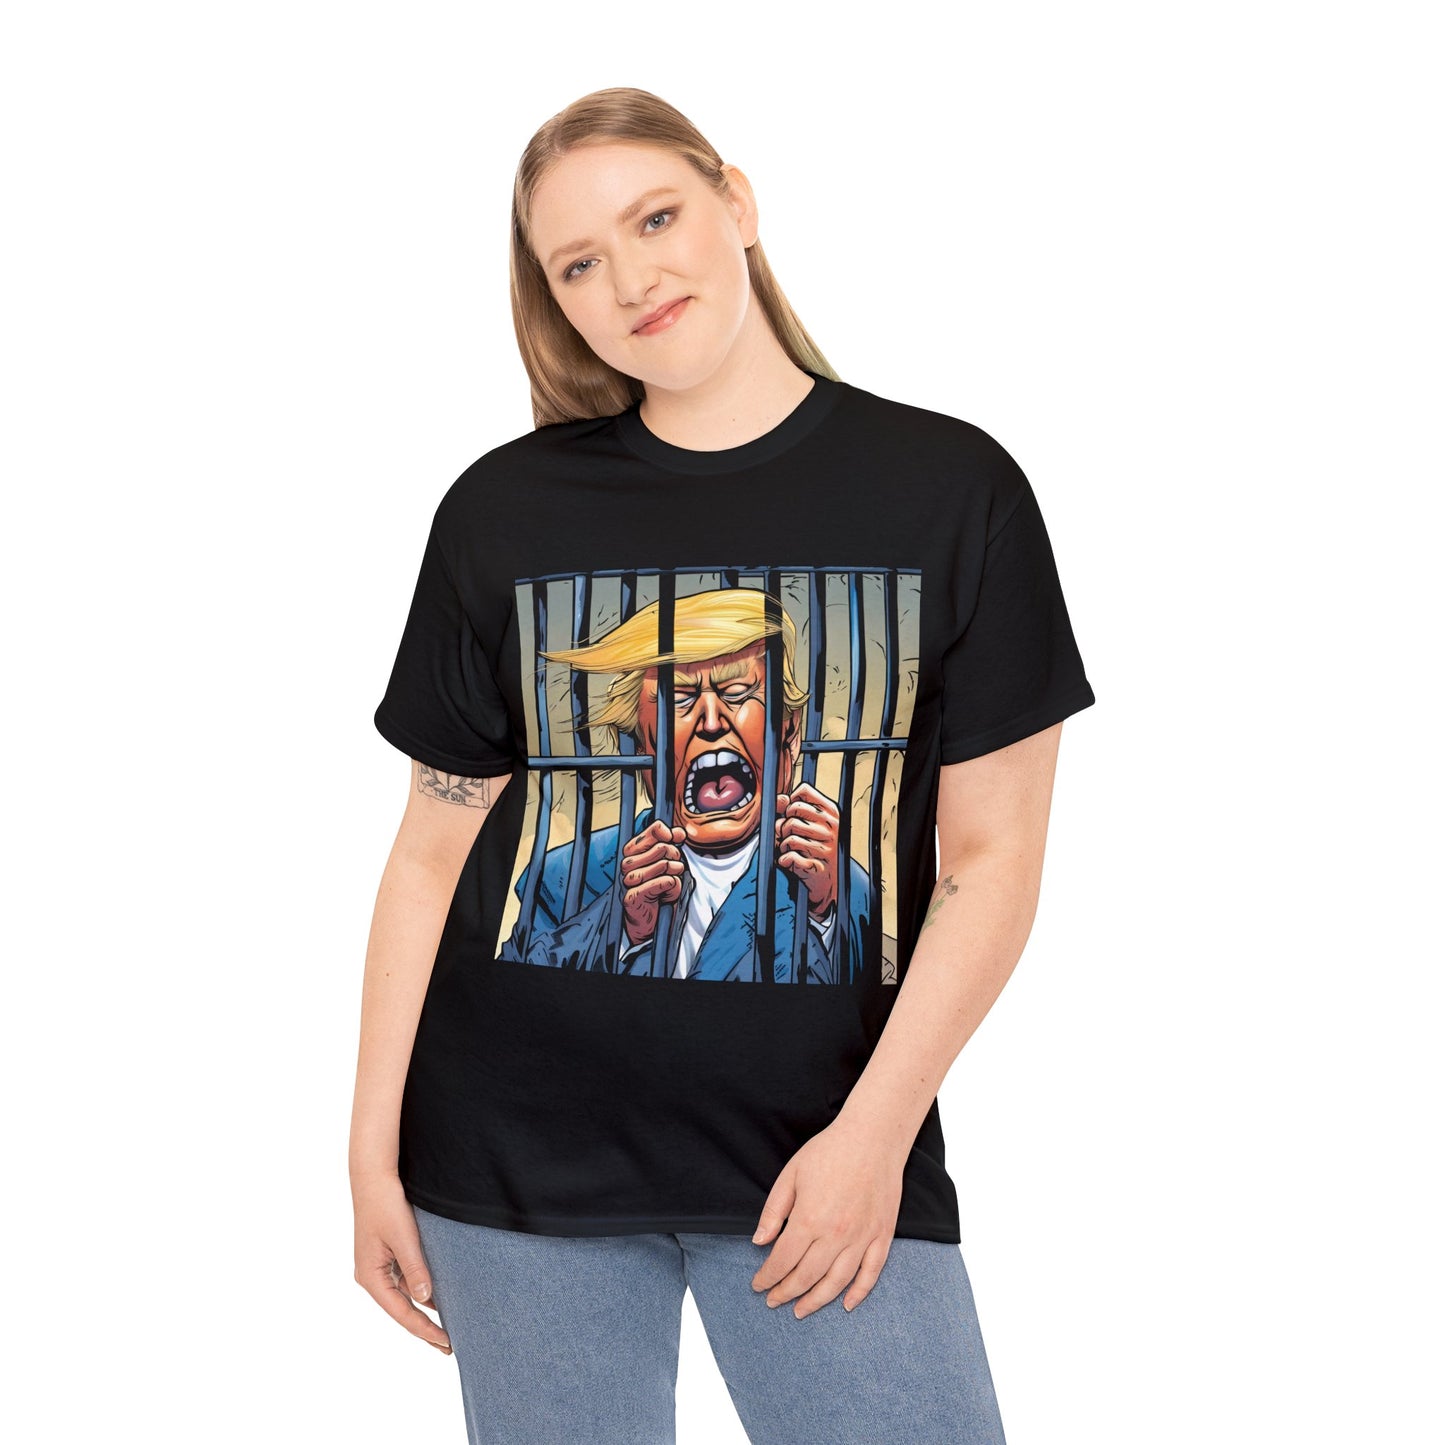 Trump behind bars, cartoon #1